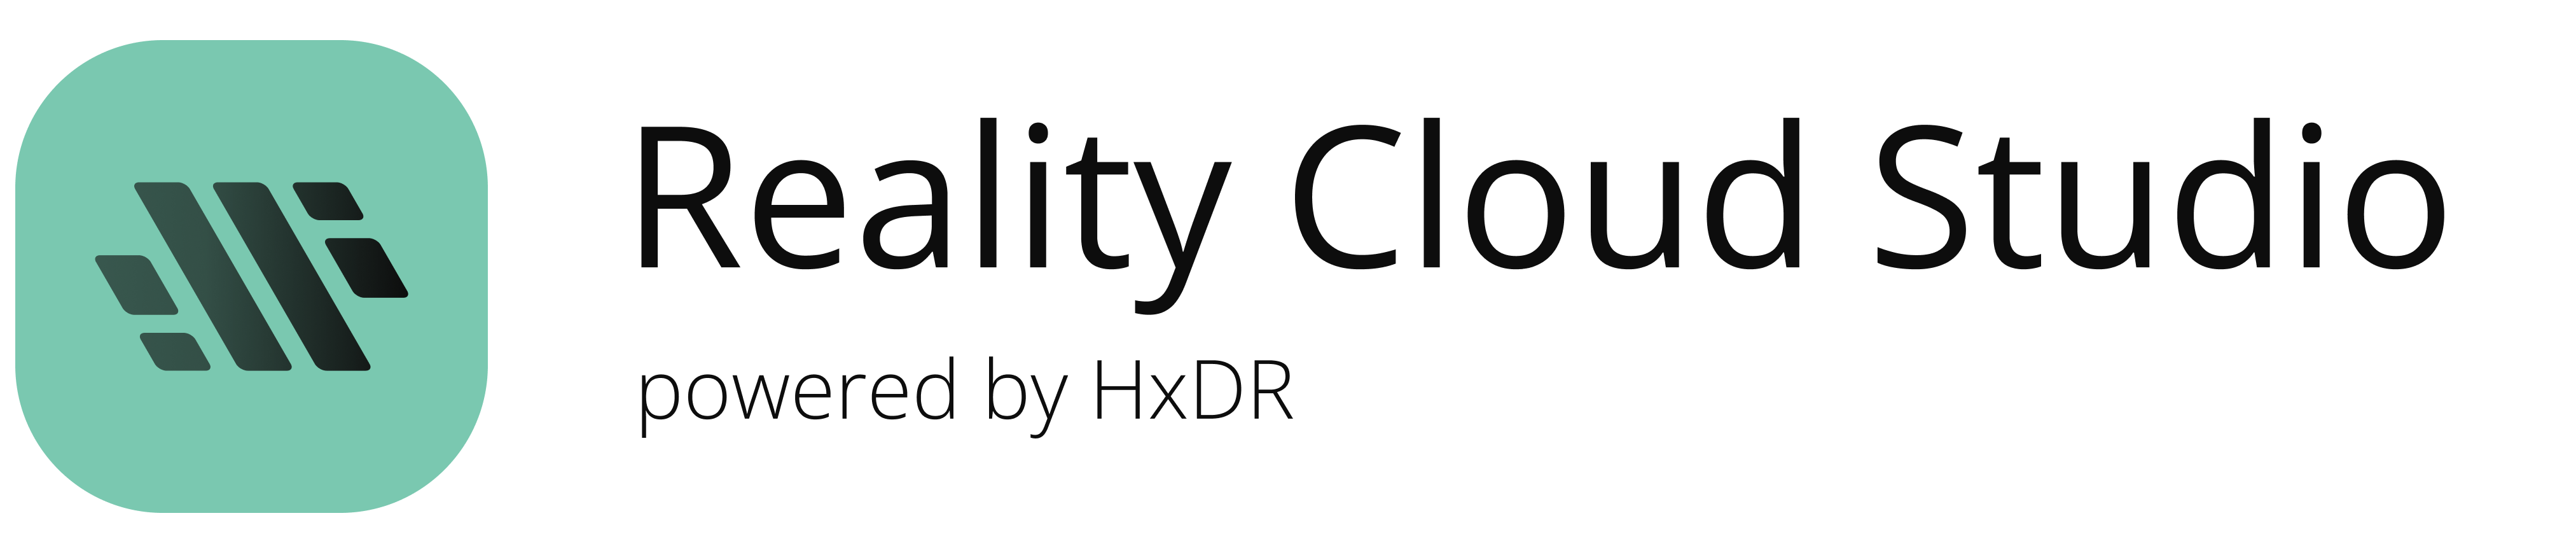 Logotipo de Reality Cloud Studio, con tecnología HxDR